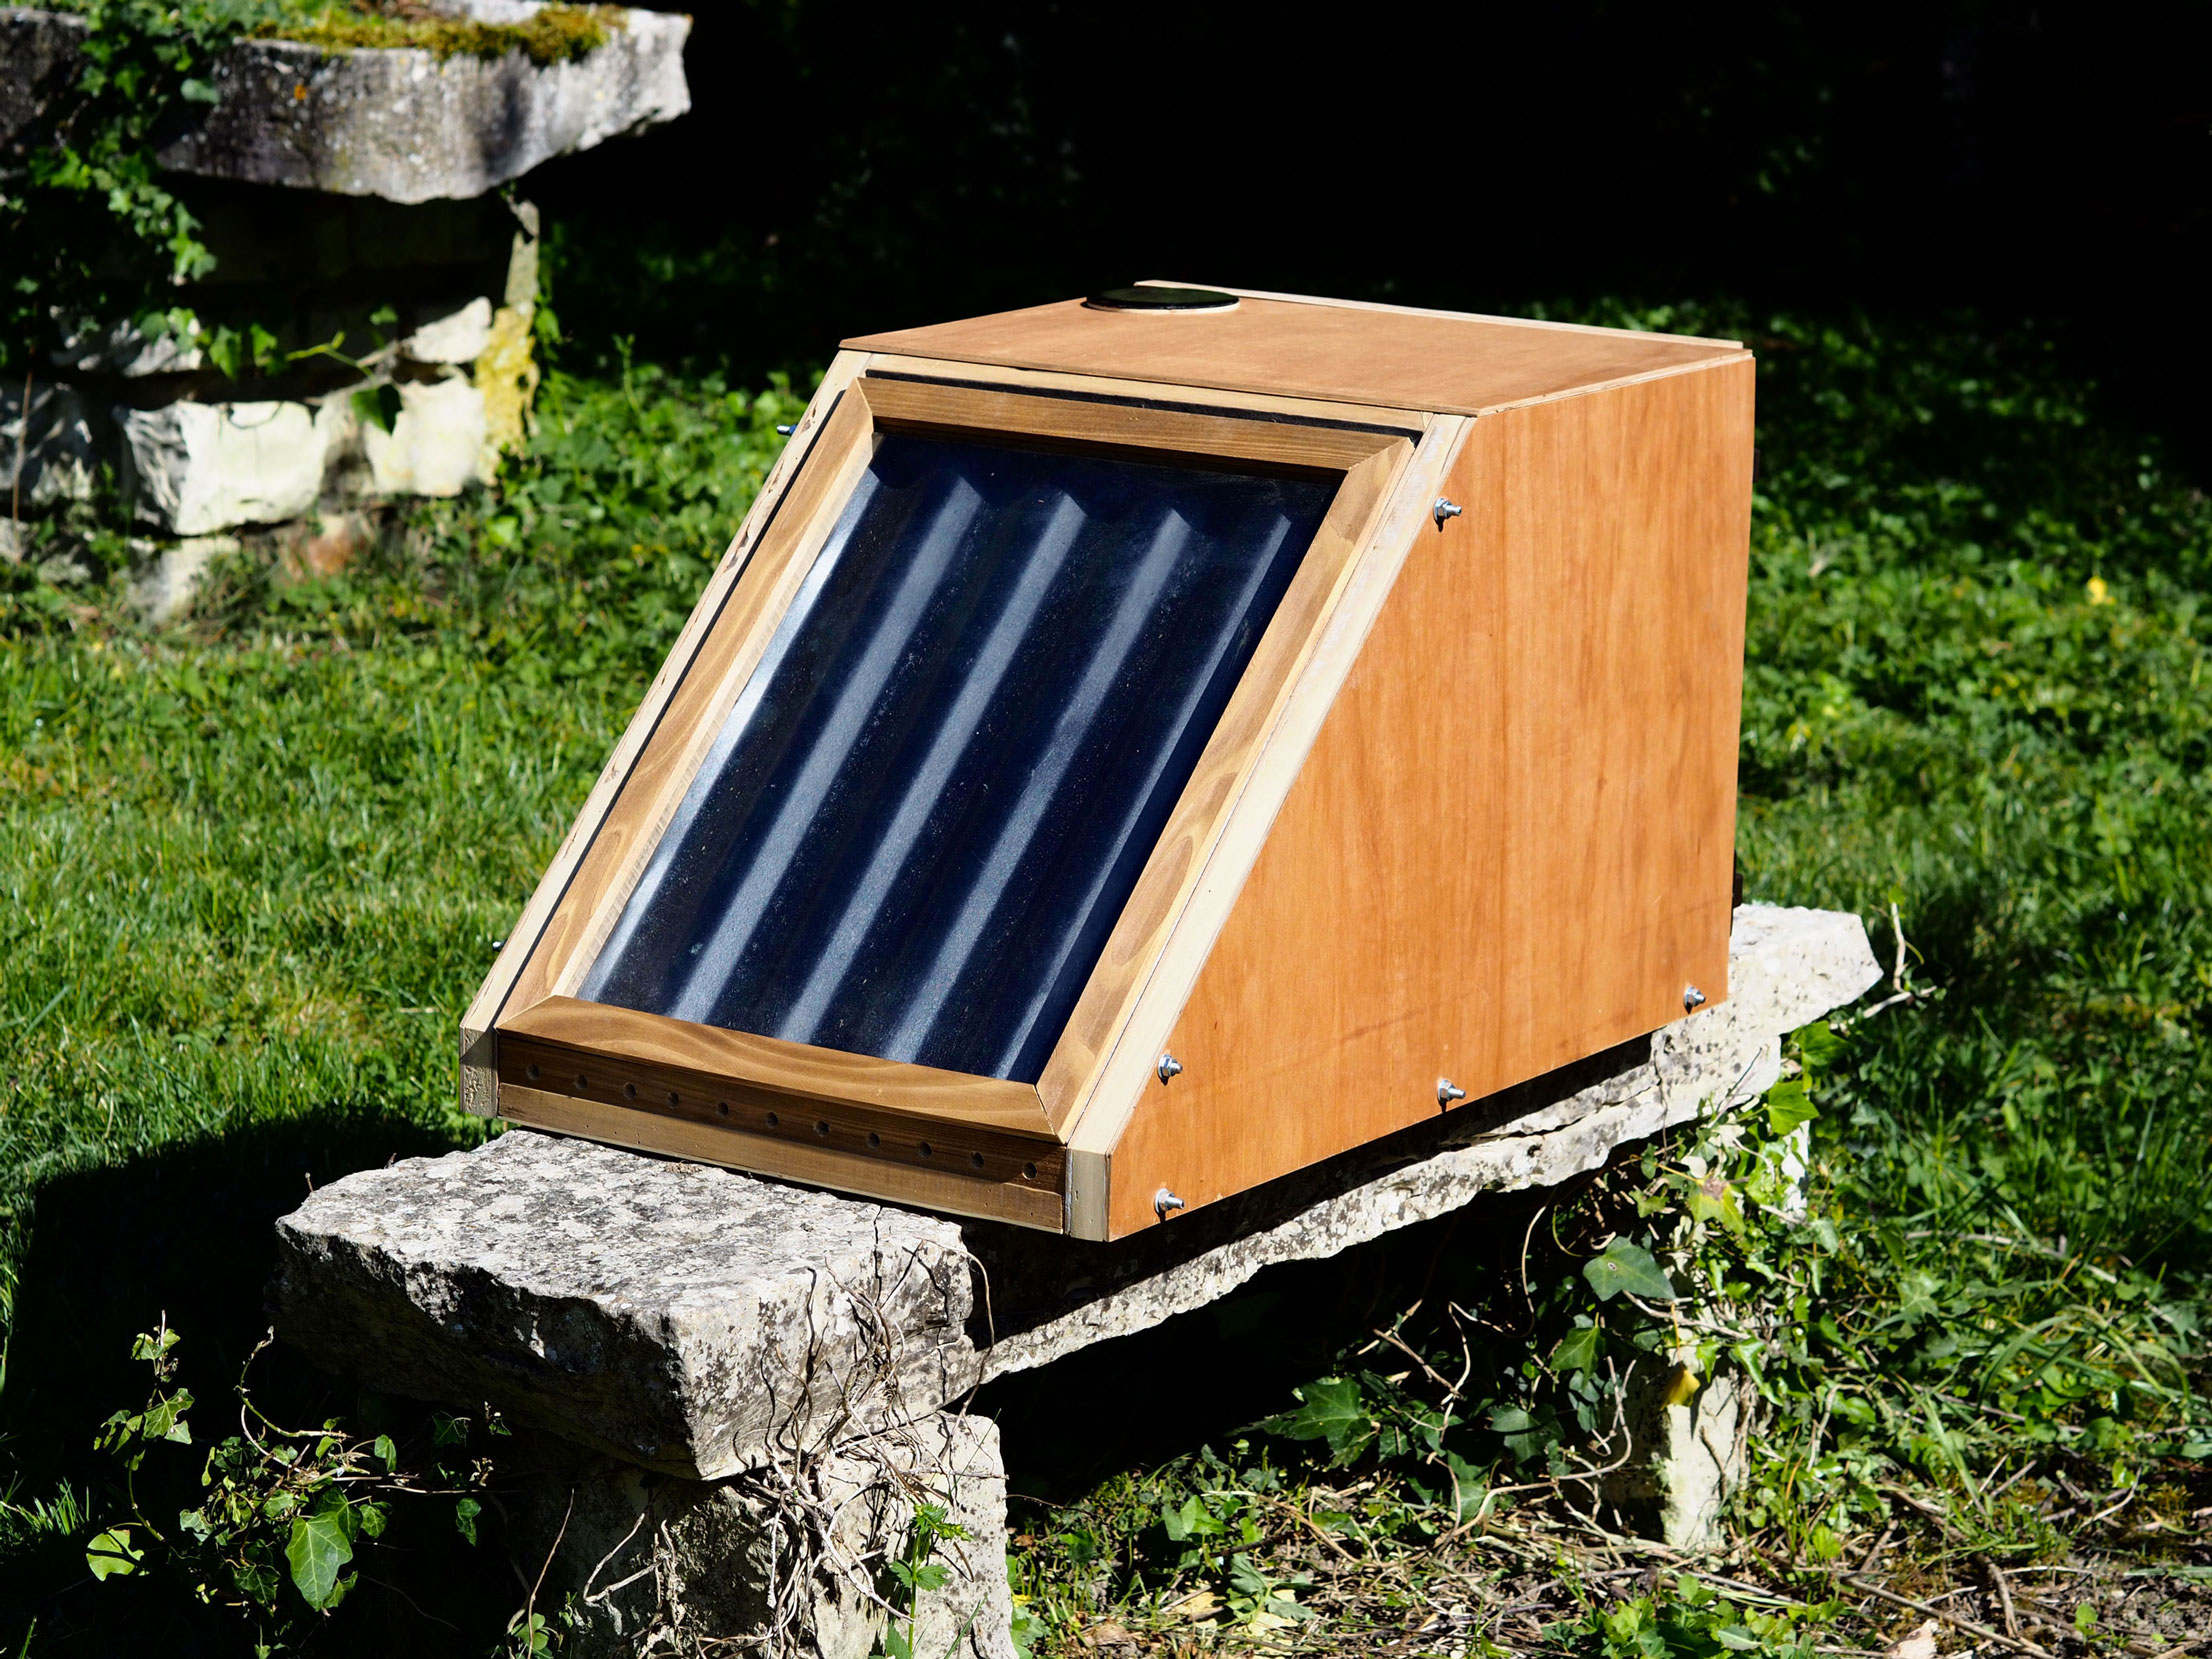 Fabriquer un séchoir solaire - Solar Brother